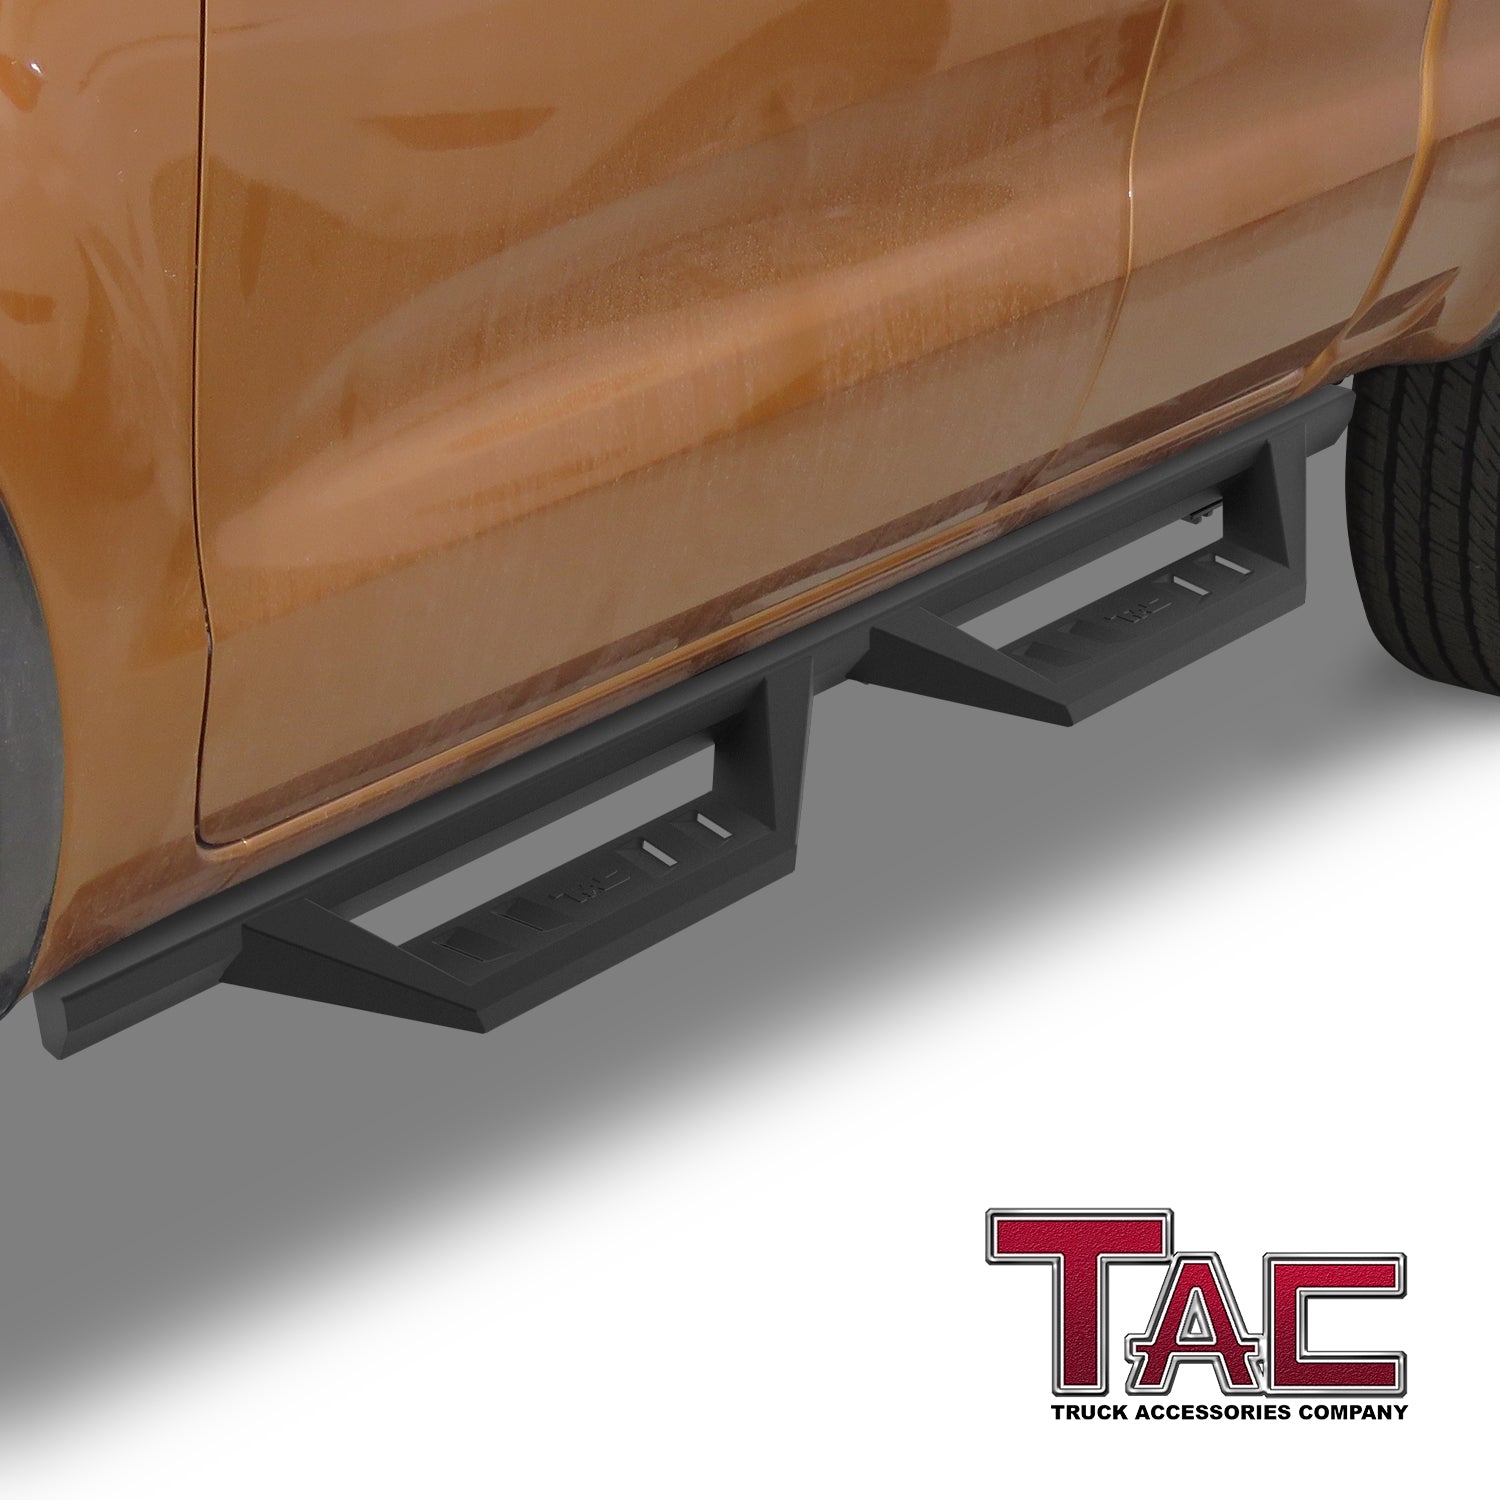 TAC Sidewinder Running Boards Fit 2019-2023 Ford Ranger Super Cab Truck 4” Drop Fine Texture Black Side Steps Nerf Bars Rock Slider Armor Off-Road (2pcs) - 0